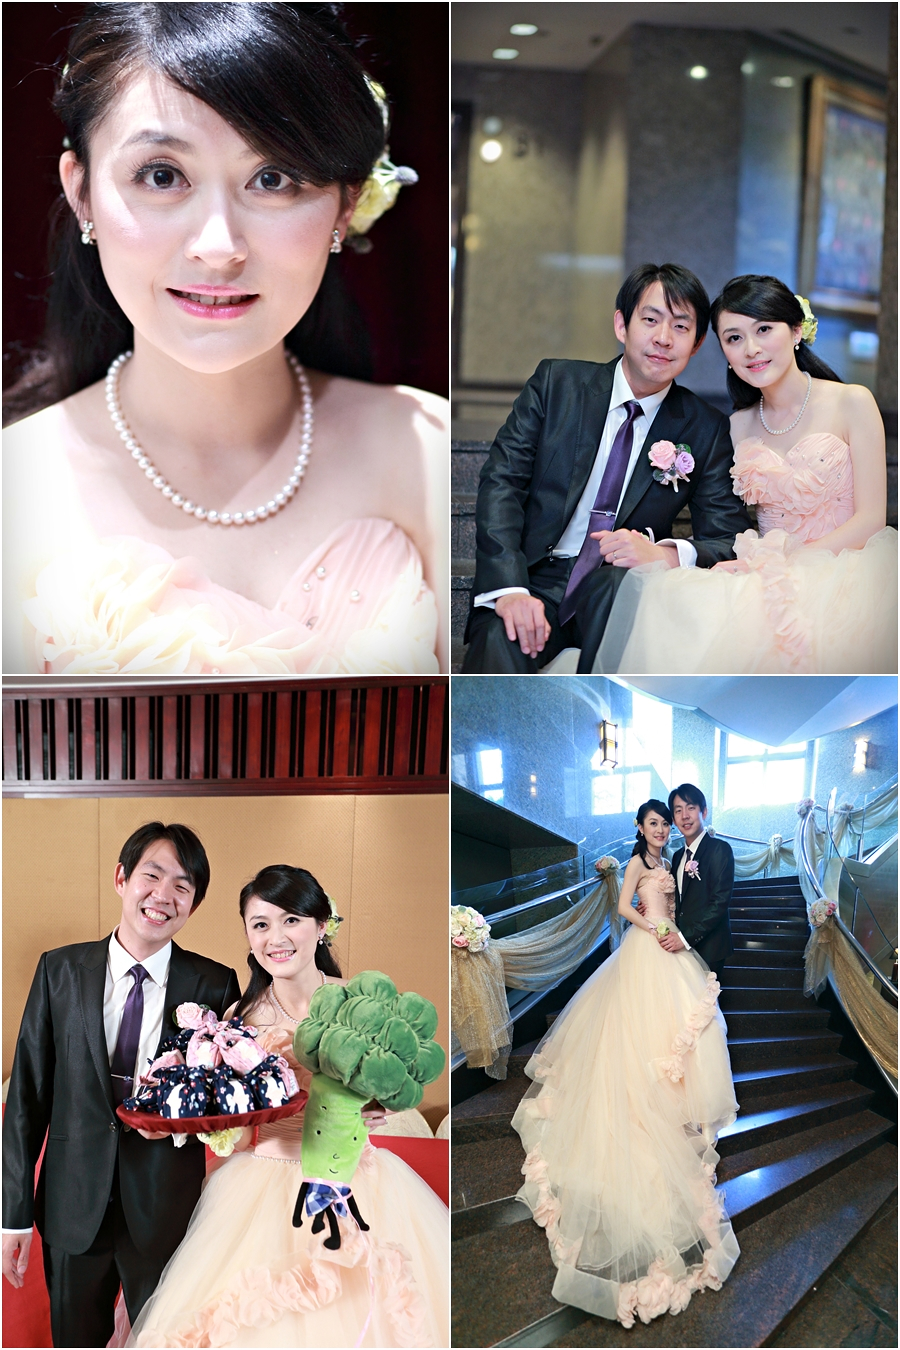 婚攝推薦,婚攝,婚禮記錄,搖滾雙魚,台北遠企,婚禮攝影